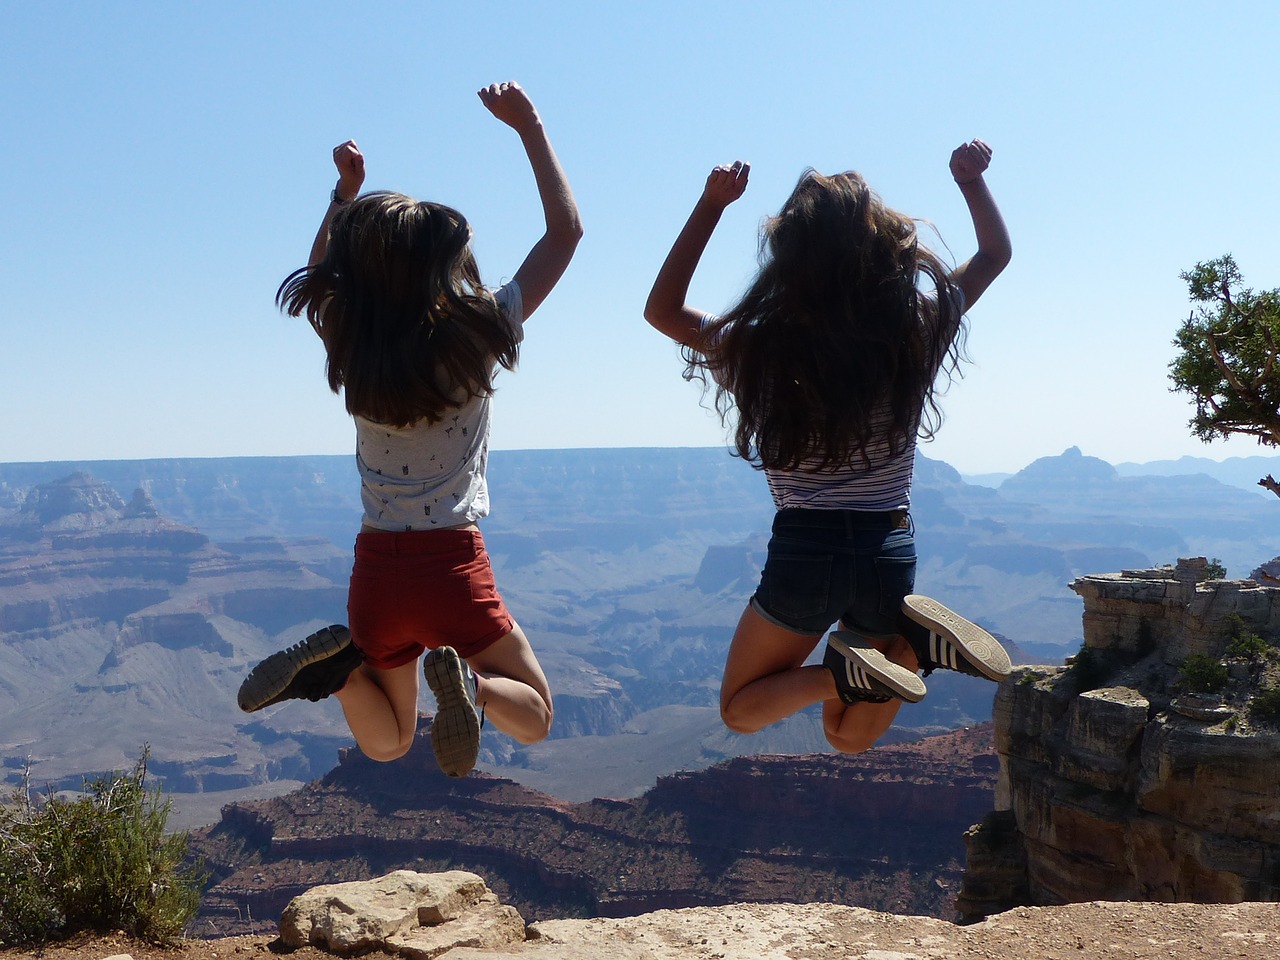 Zwei Teenagerinnen springen vor dem Hintergrund des Grand Canyon in die Luft